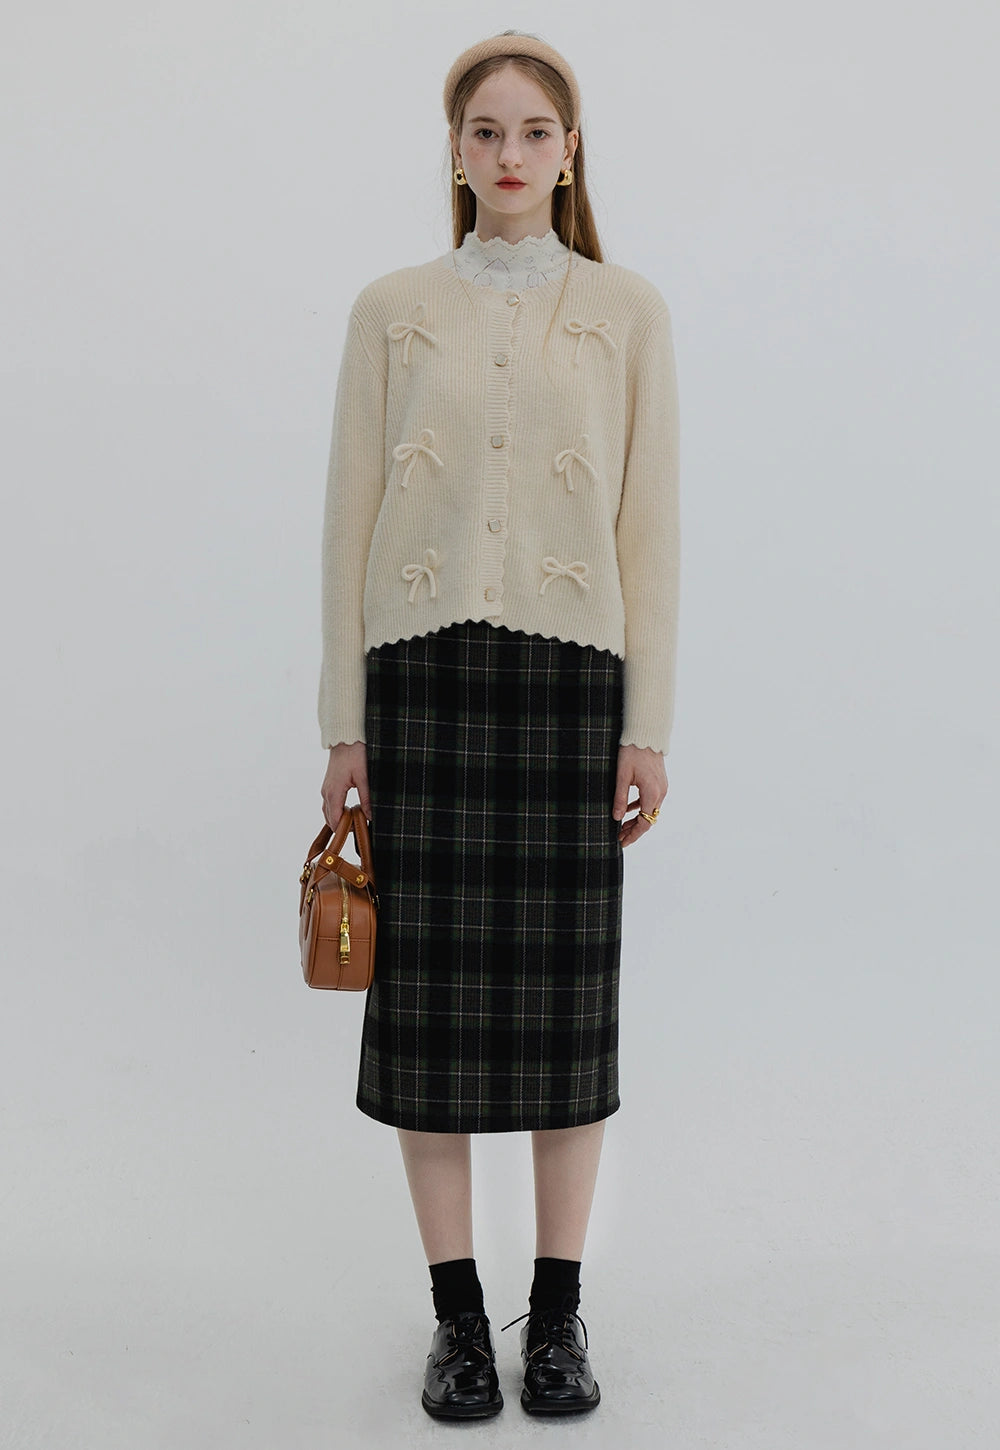 Women's Plaid Long A-Line Skirt - High Waist Tartan Maxi Skirt